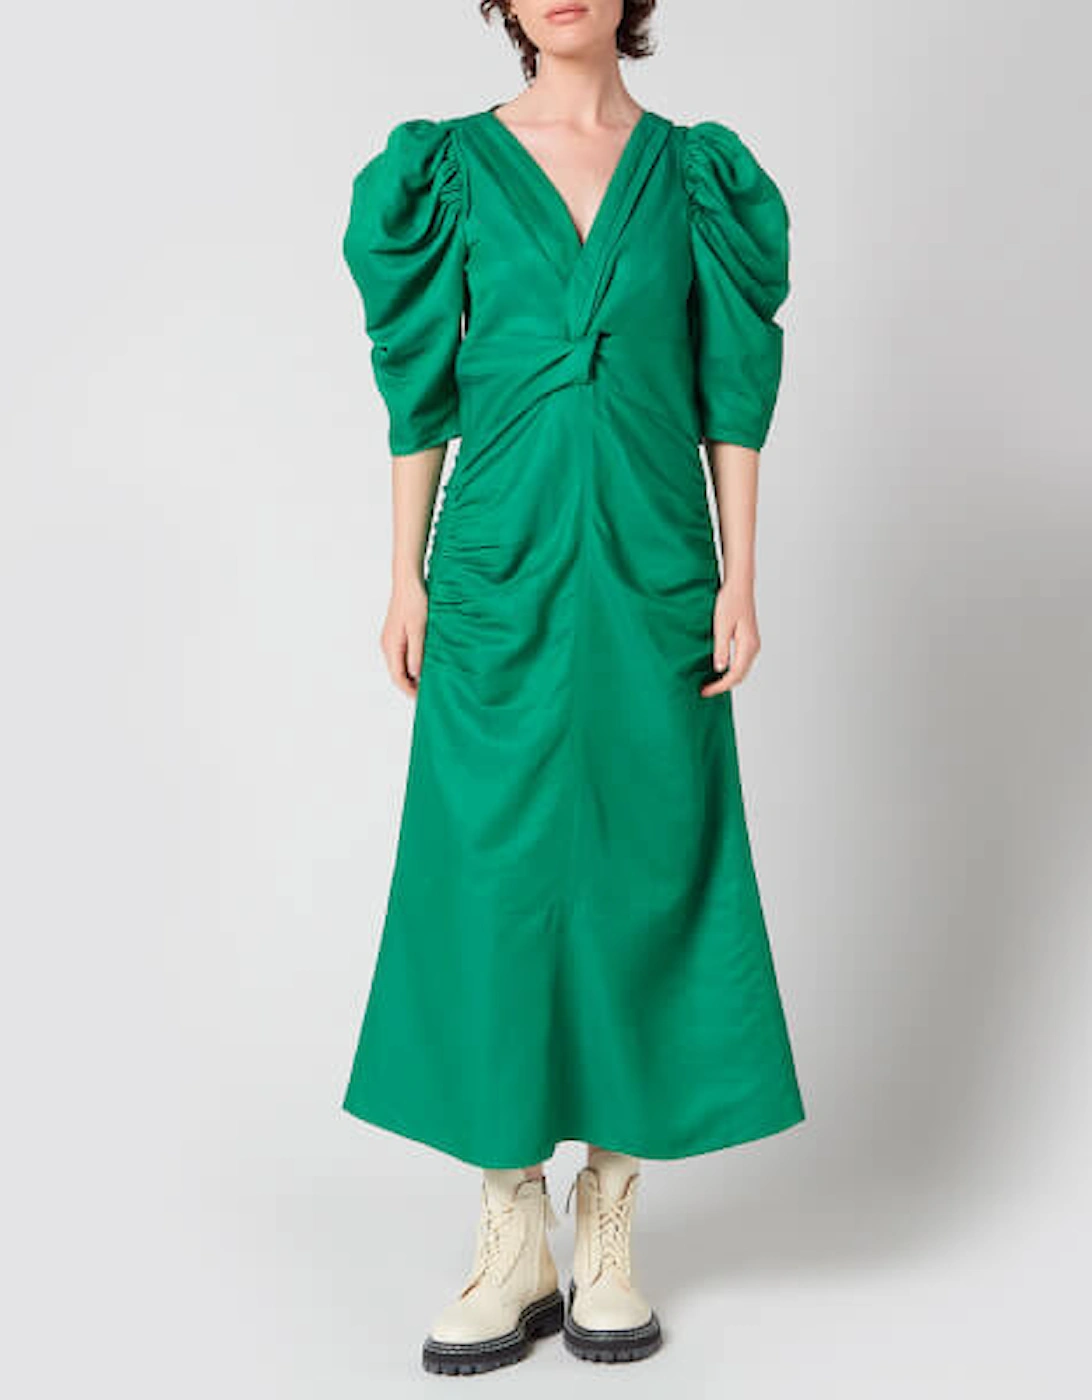 Women's Linen Viscose Shirred Sleeve Dress - Bright Green - - Home - Women's Linen Viscose Shirred Sleeve Dress - Bright Green, 4 of 3